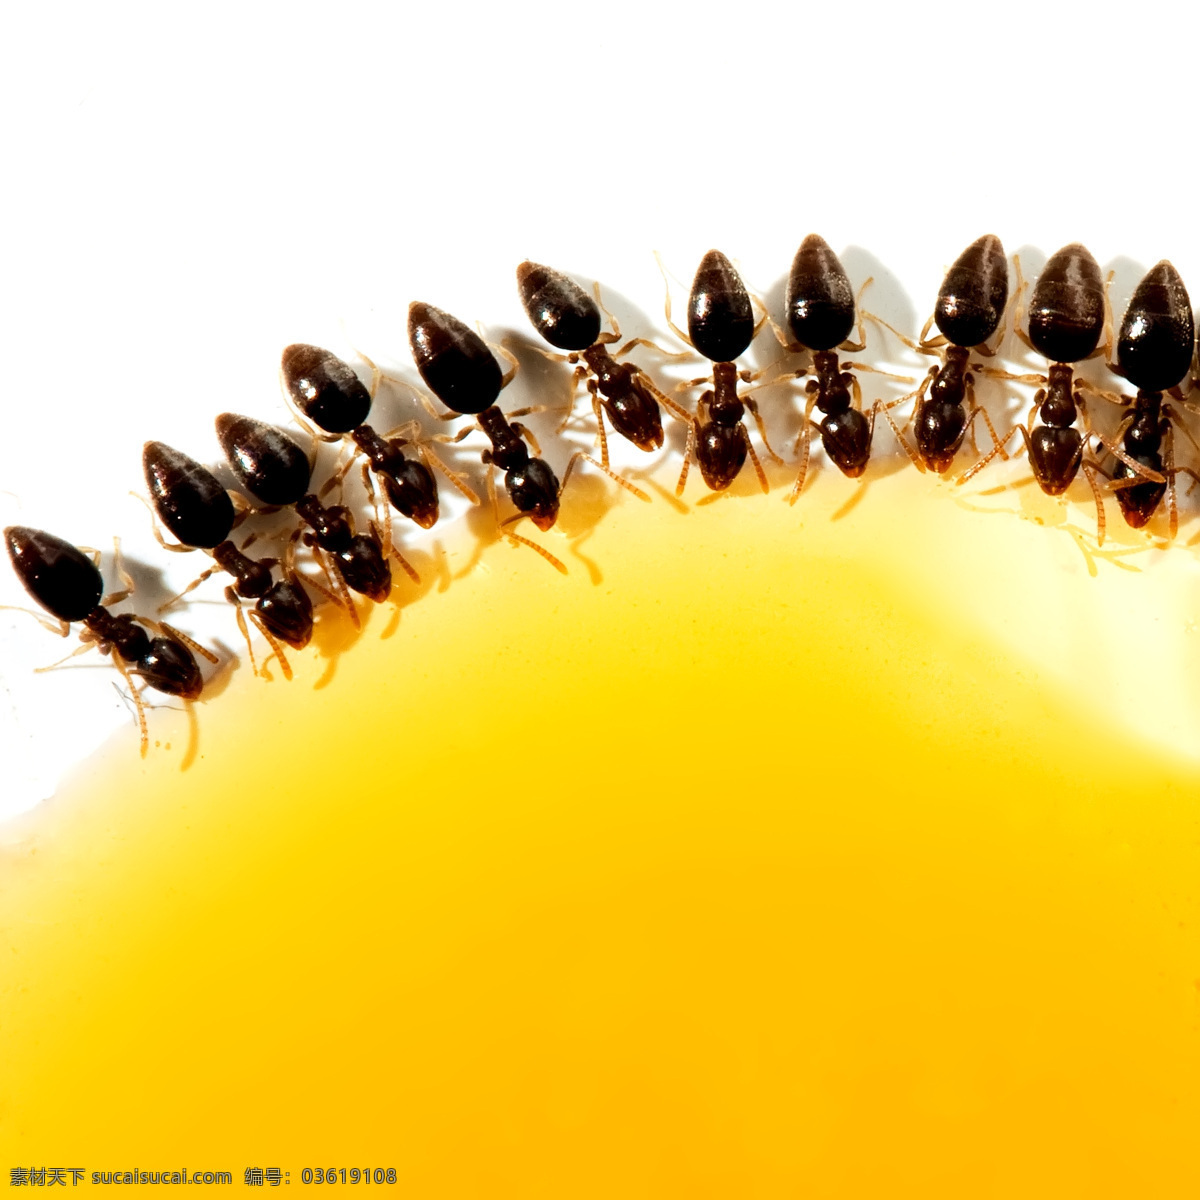 蚂蚁 昆虫 蚂蚁素材 蚂蚁图片 生物世界 昆虫摄影 蚁 昆蜉 昆虫科 蚁类